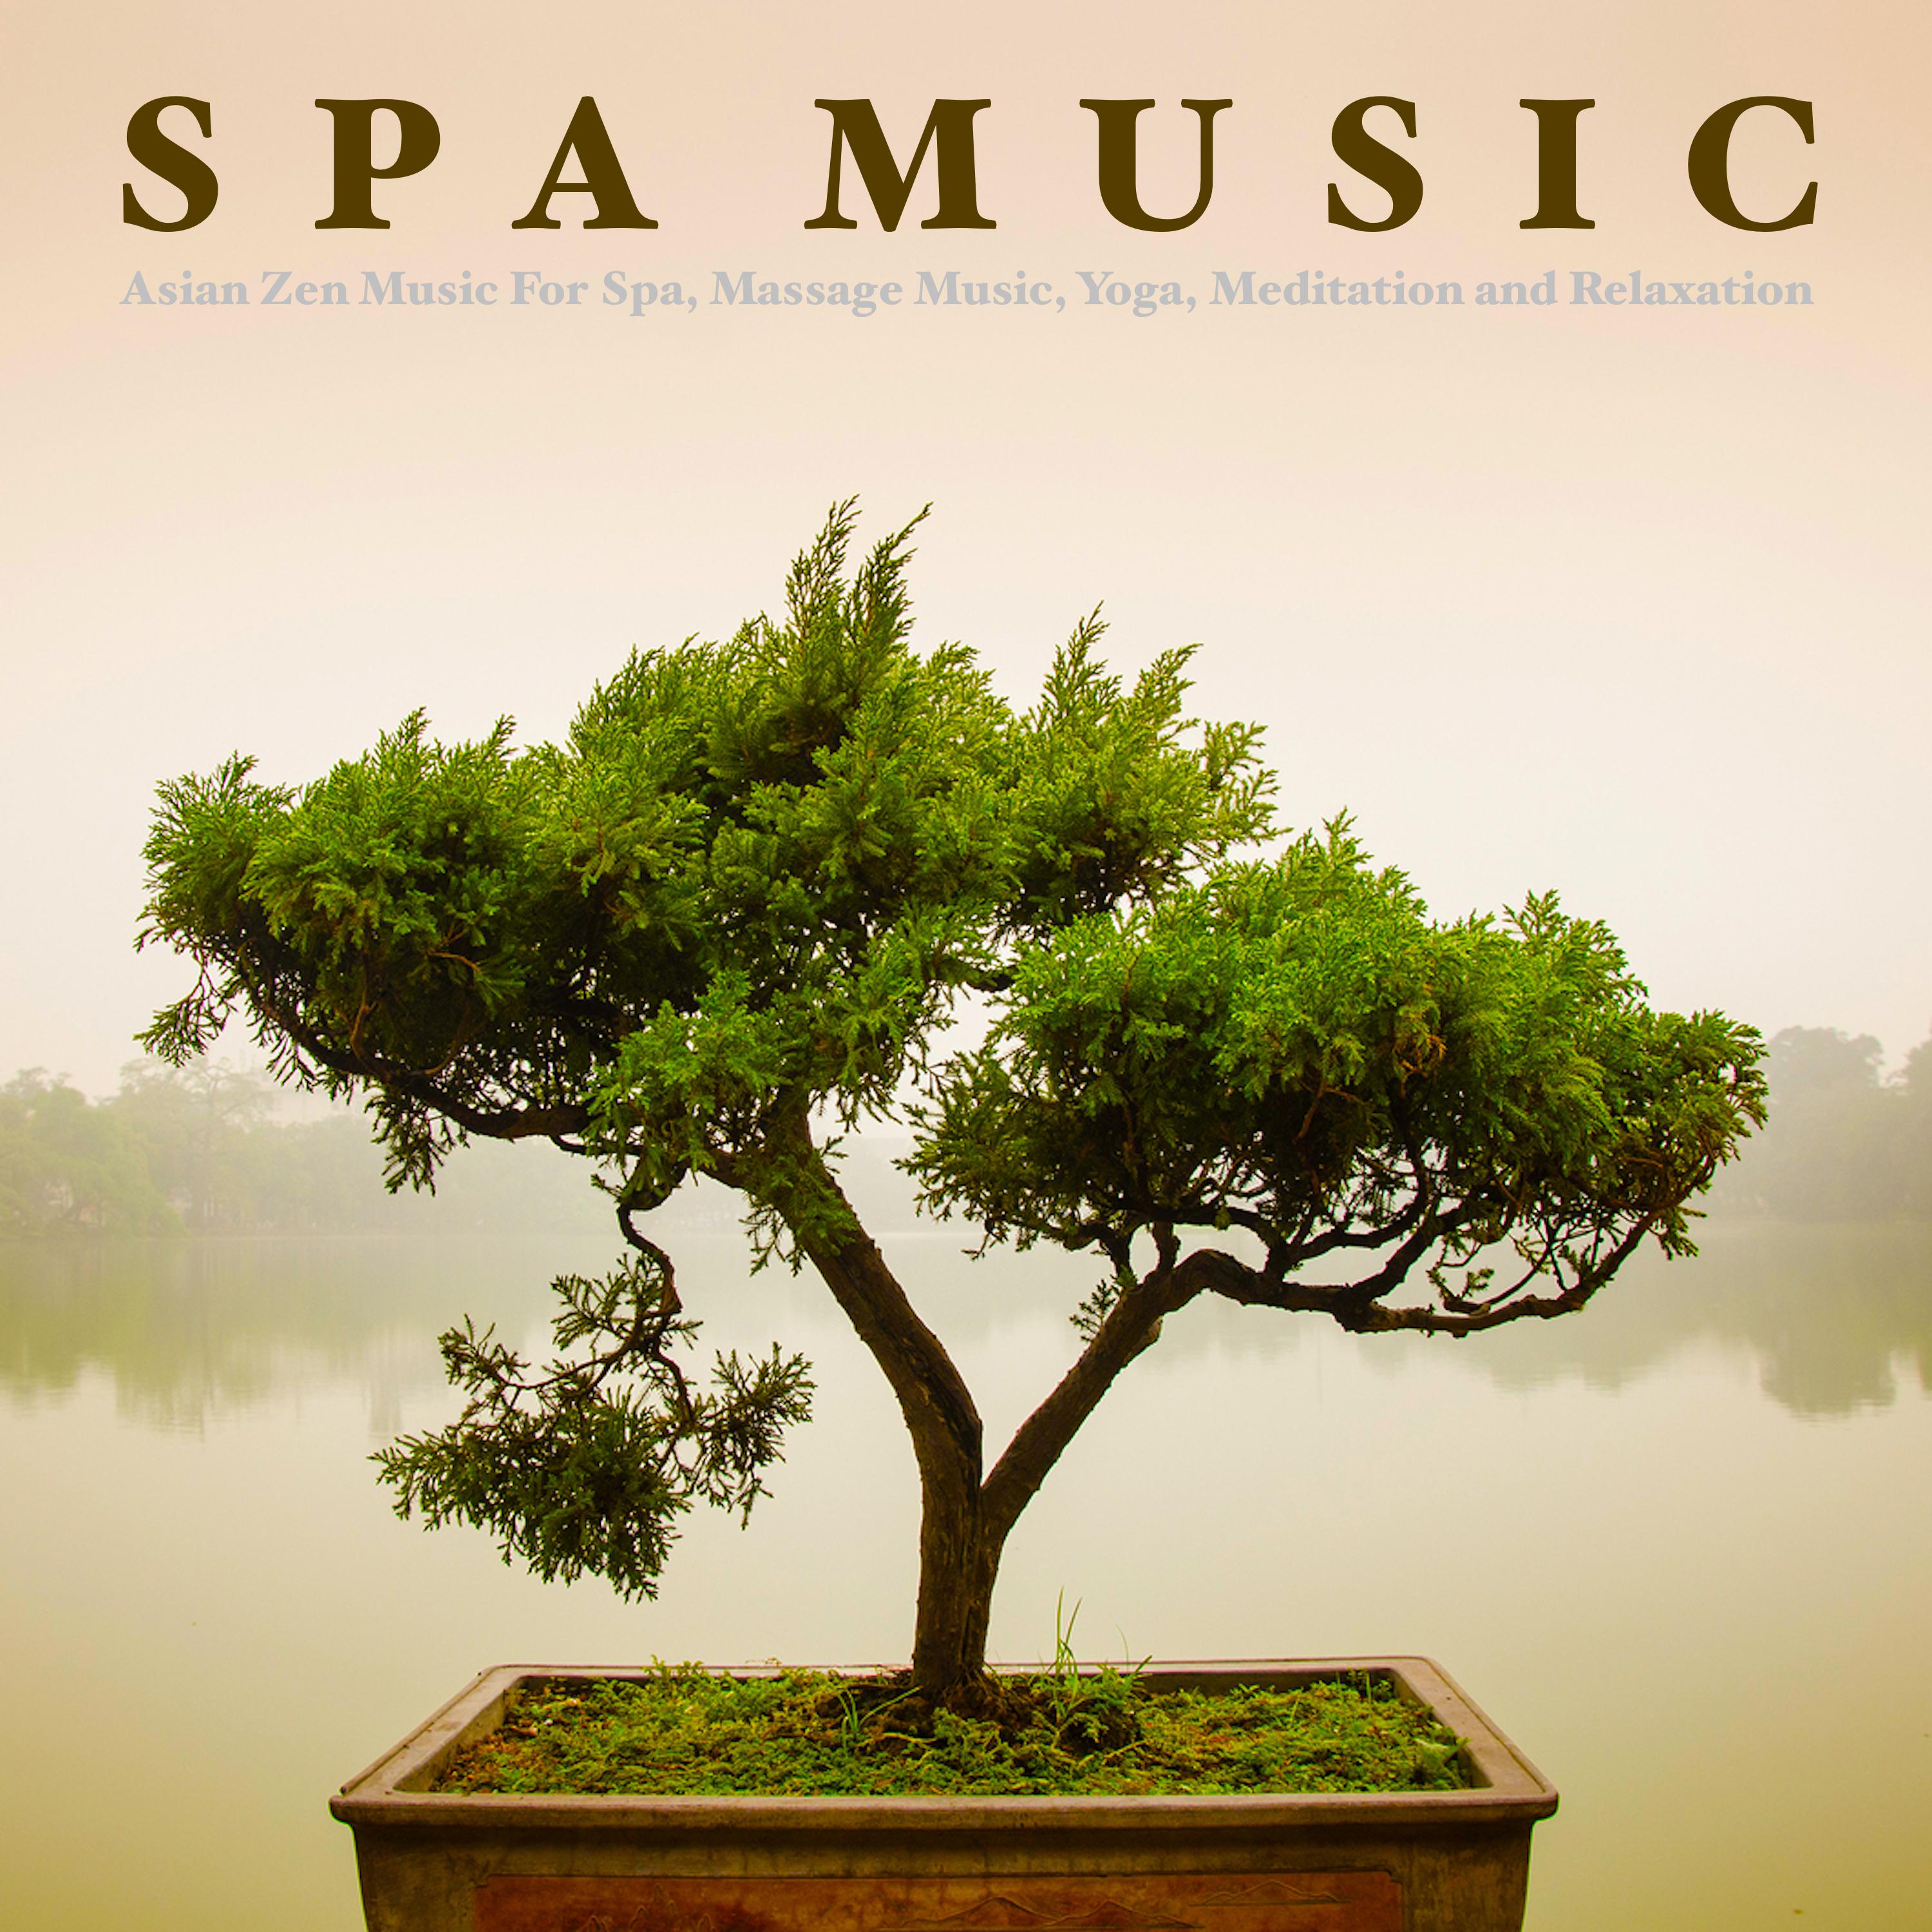 Massage Therapy Music